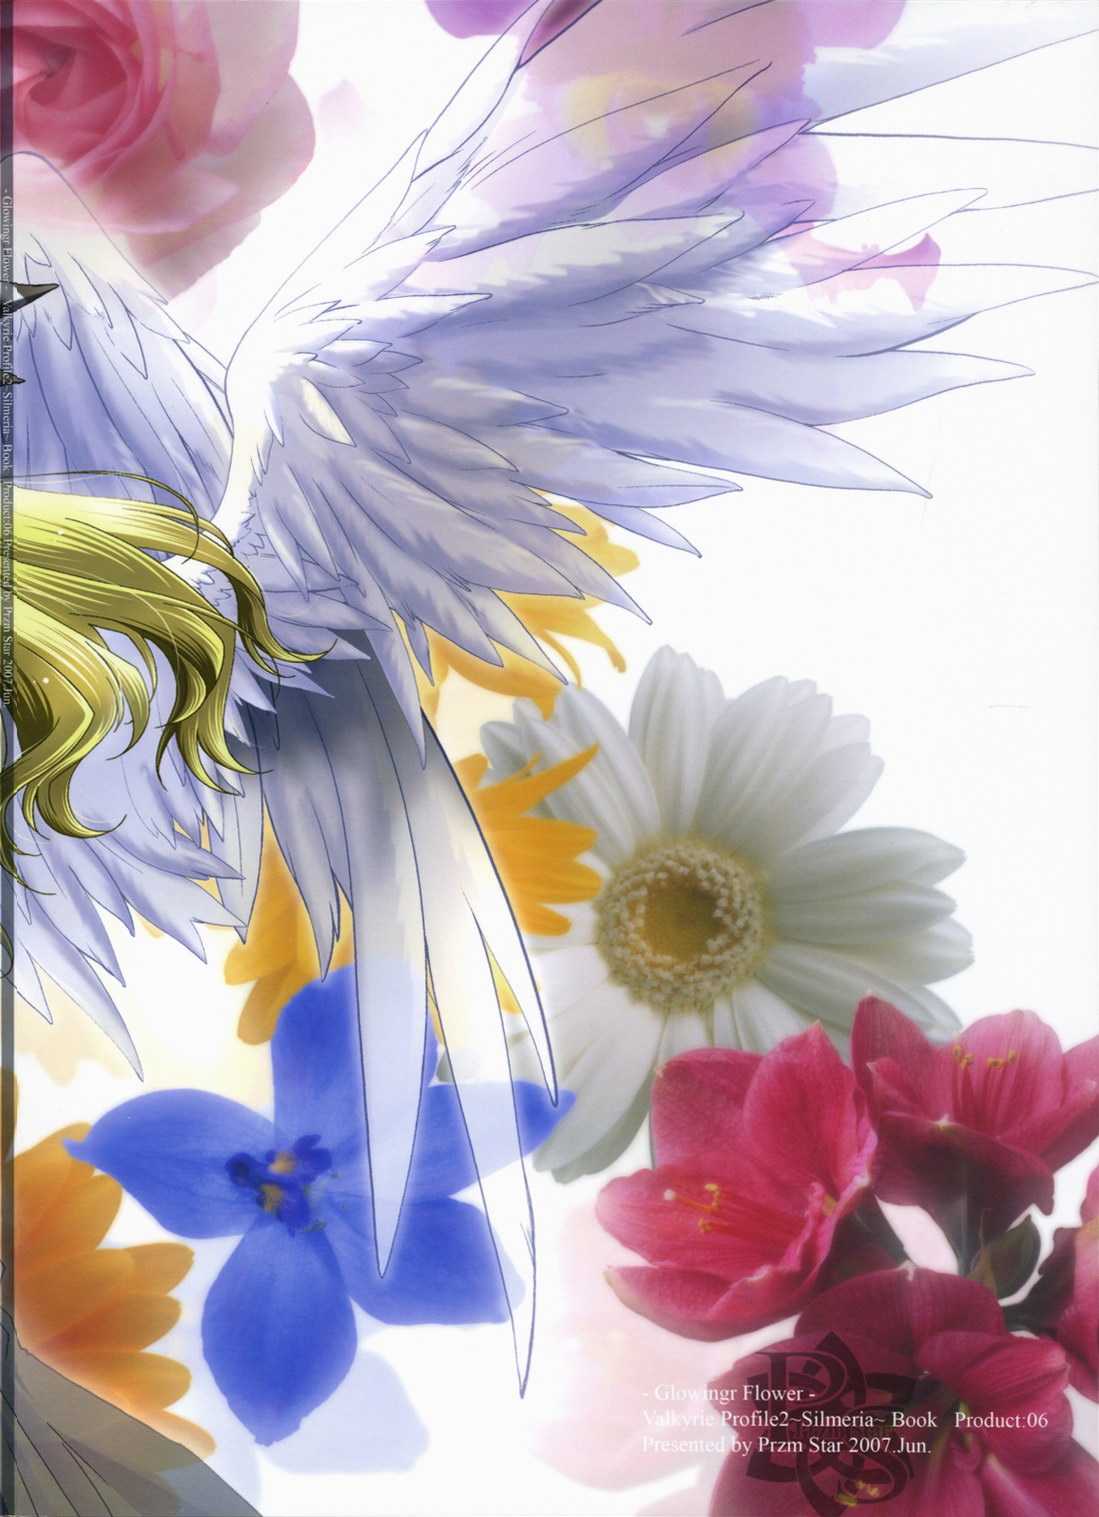 [Przm Star] [2007-06-17] [SC36] Glowing Flower 